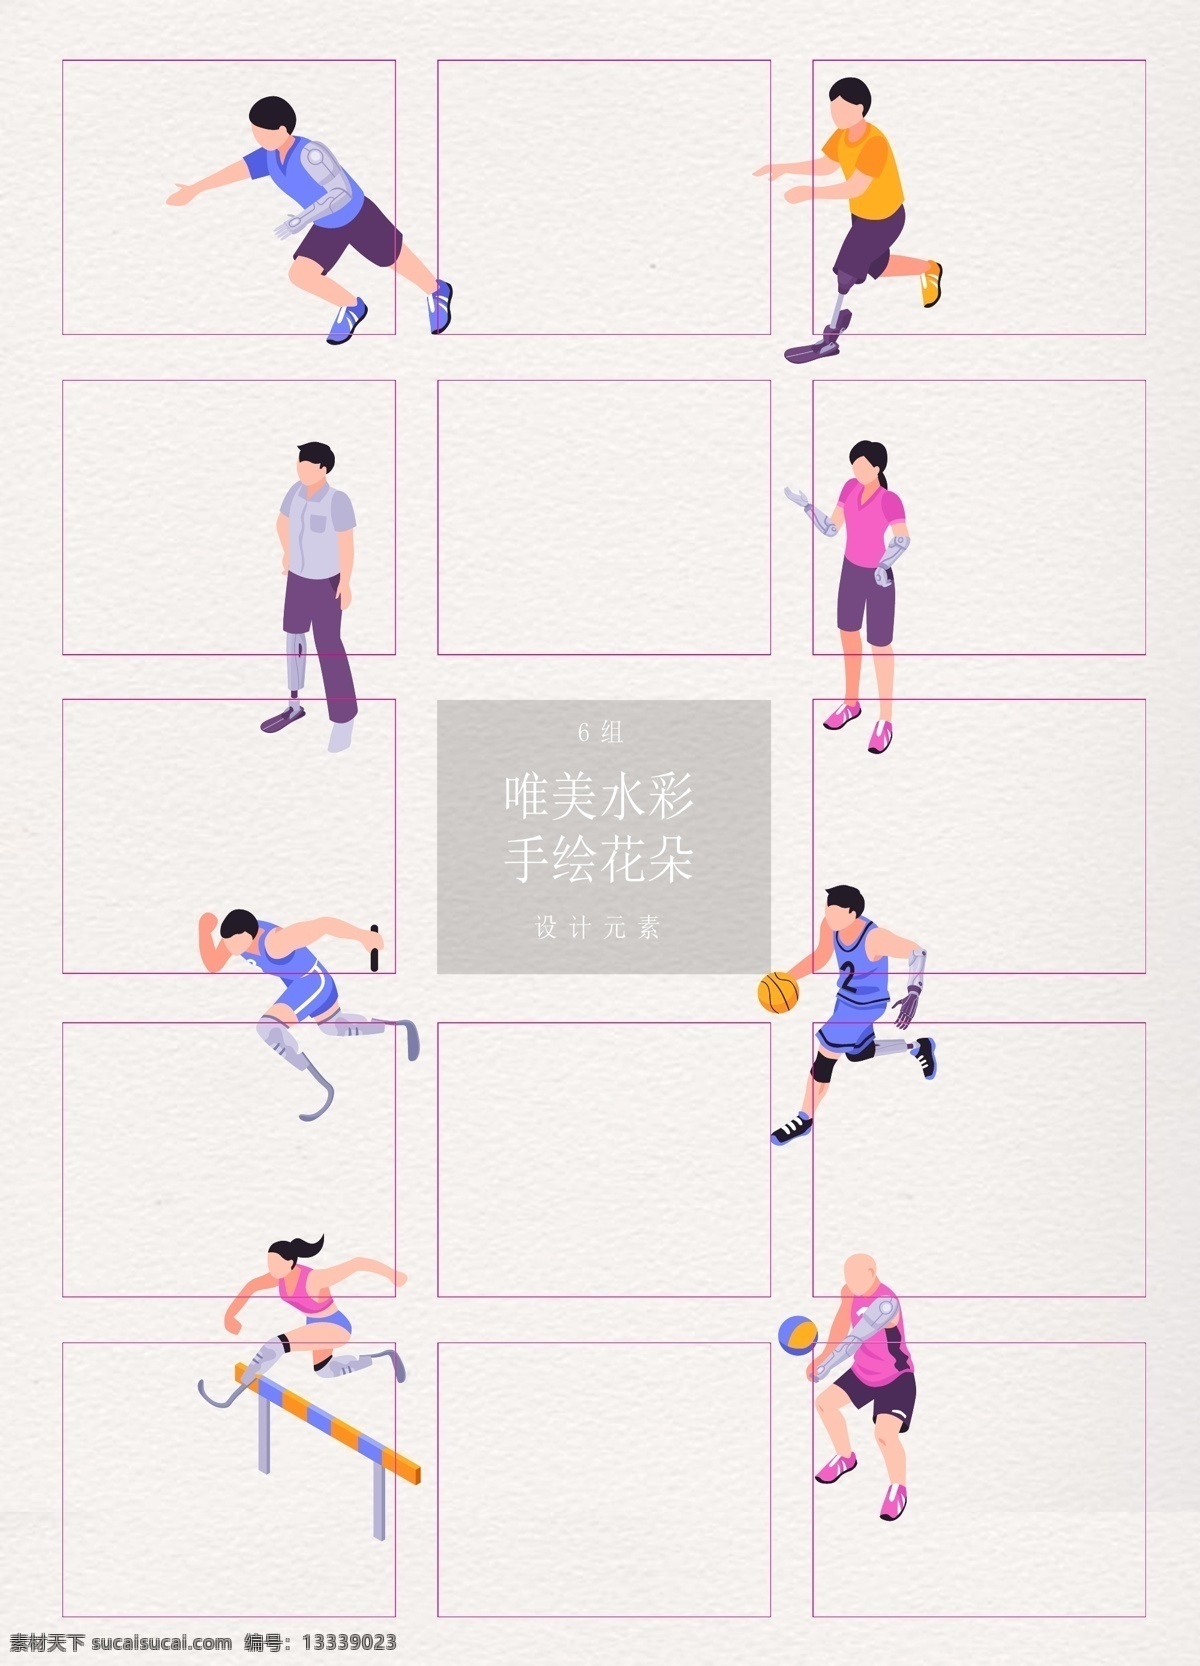 彩色 卡通 残疾人 运动员 矢量图 男人 跑步 残奥会 女孩 打篮球 跨栏 打排球 比赛 奥运会